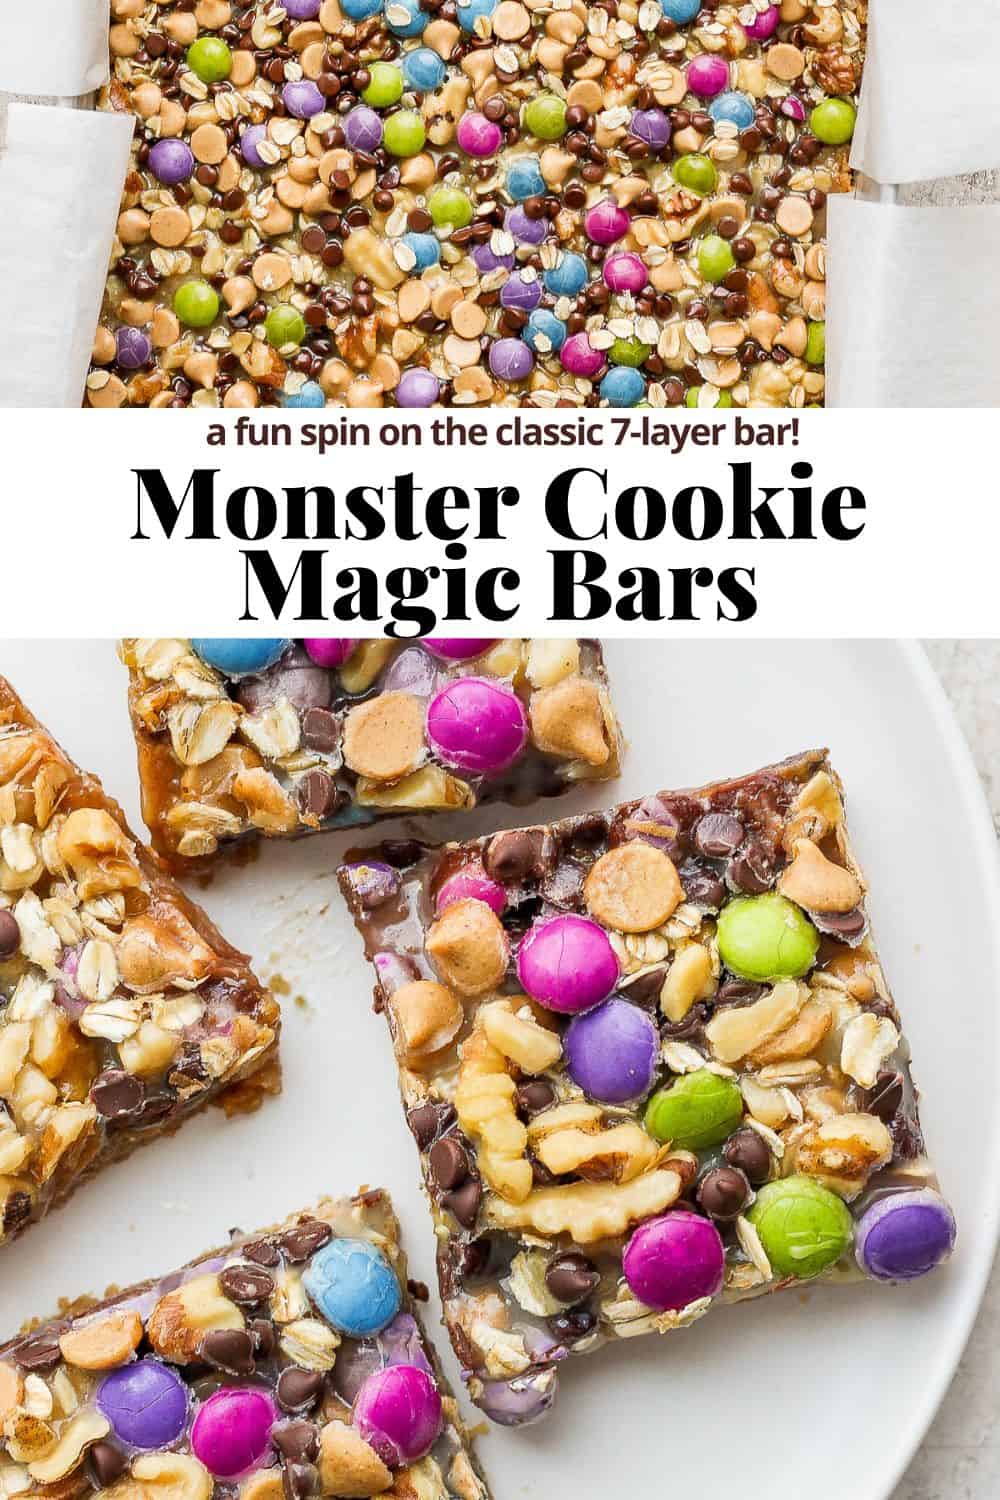 Pinterest image for monster cookie magic bars.